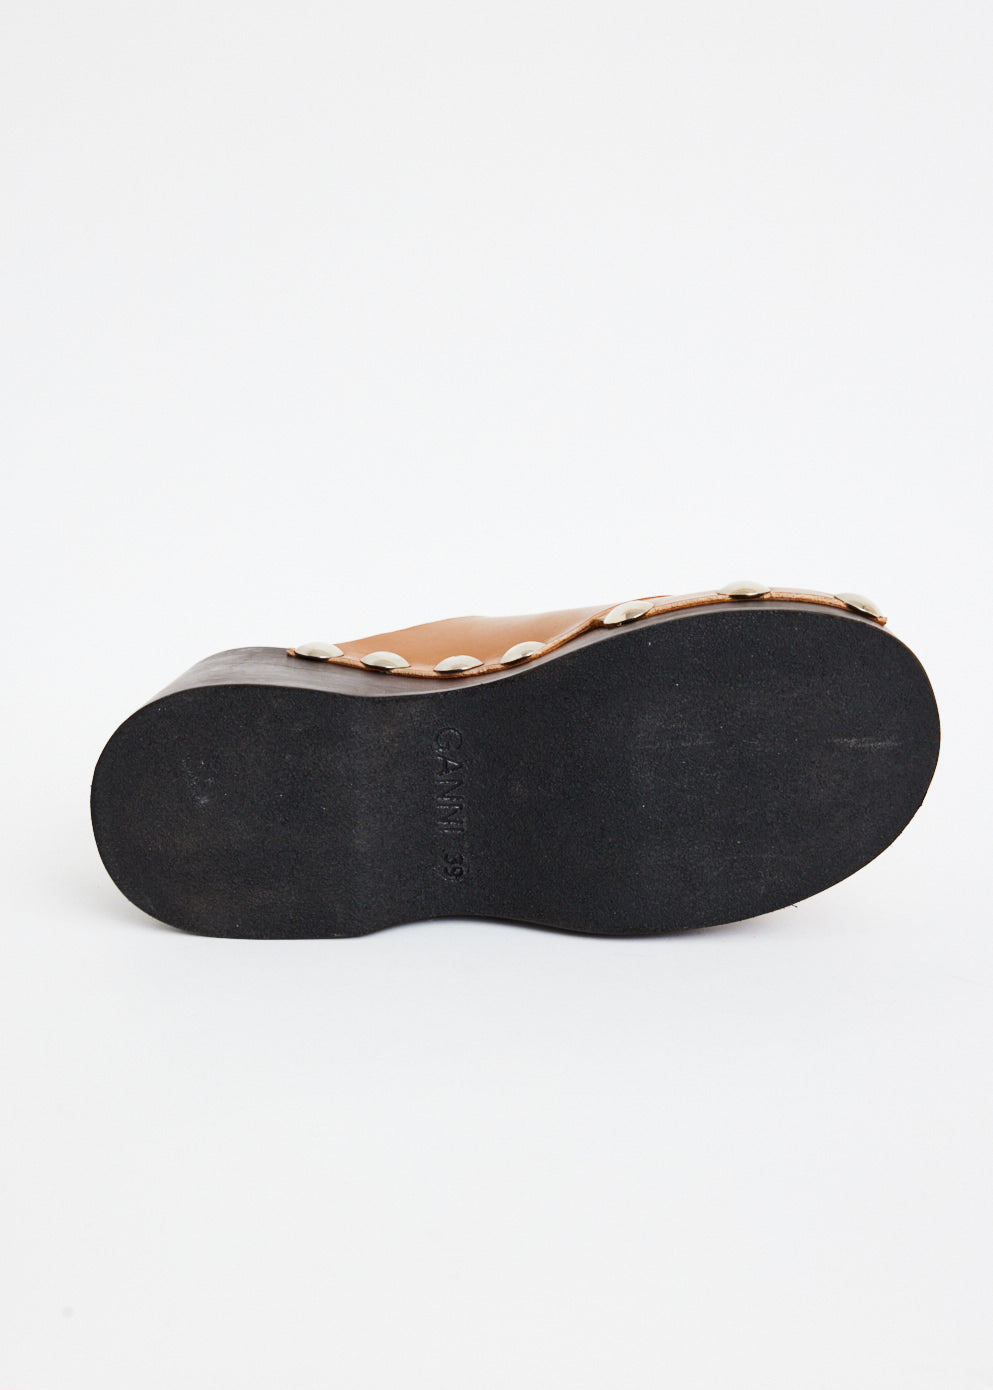 Retro Peep Toe Wood Sandal